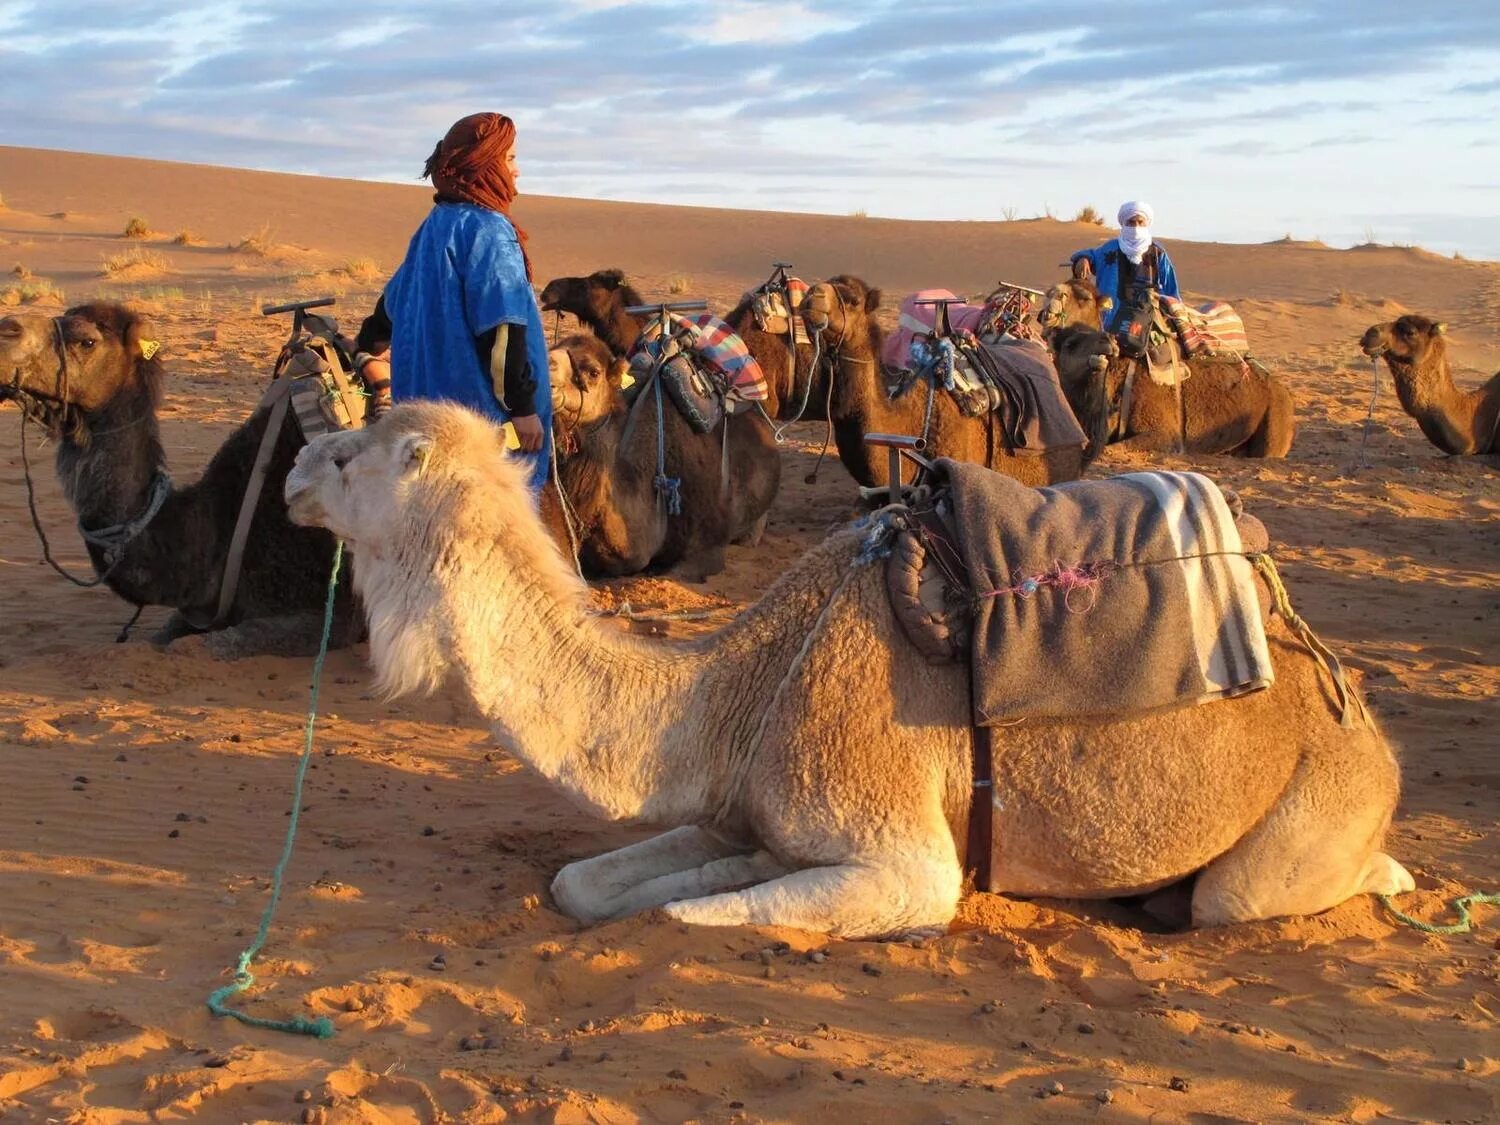 Бедуины Марокко. Караван в пустыне Каракум. Караваны верблюдов с бедуинами. Караван марокканских верблюдов дромедаров. Залив караван